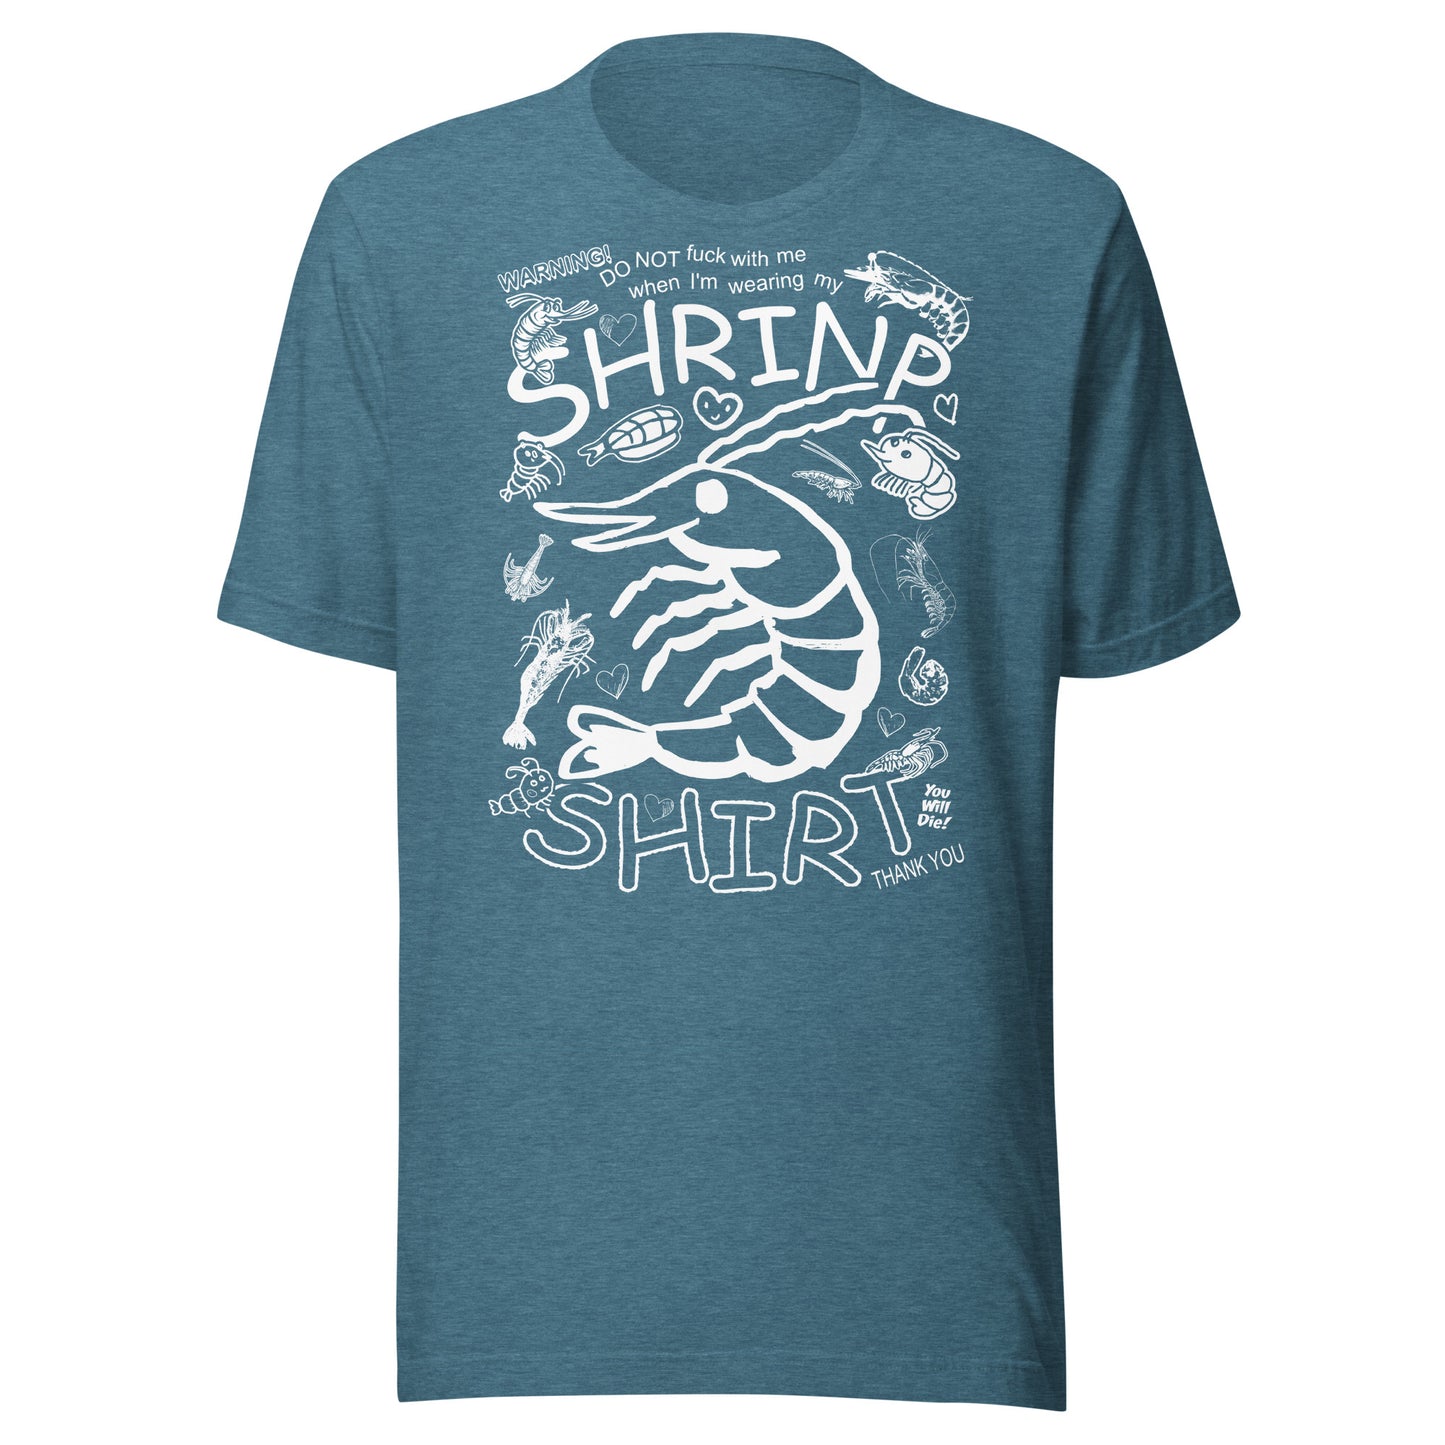 "SHRINP SHIRT" Unisex t-shirt